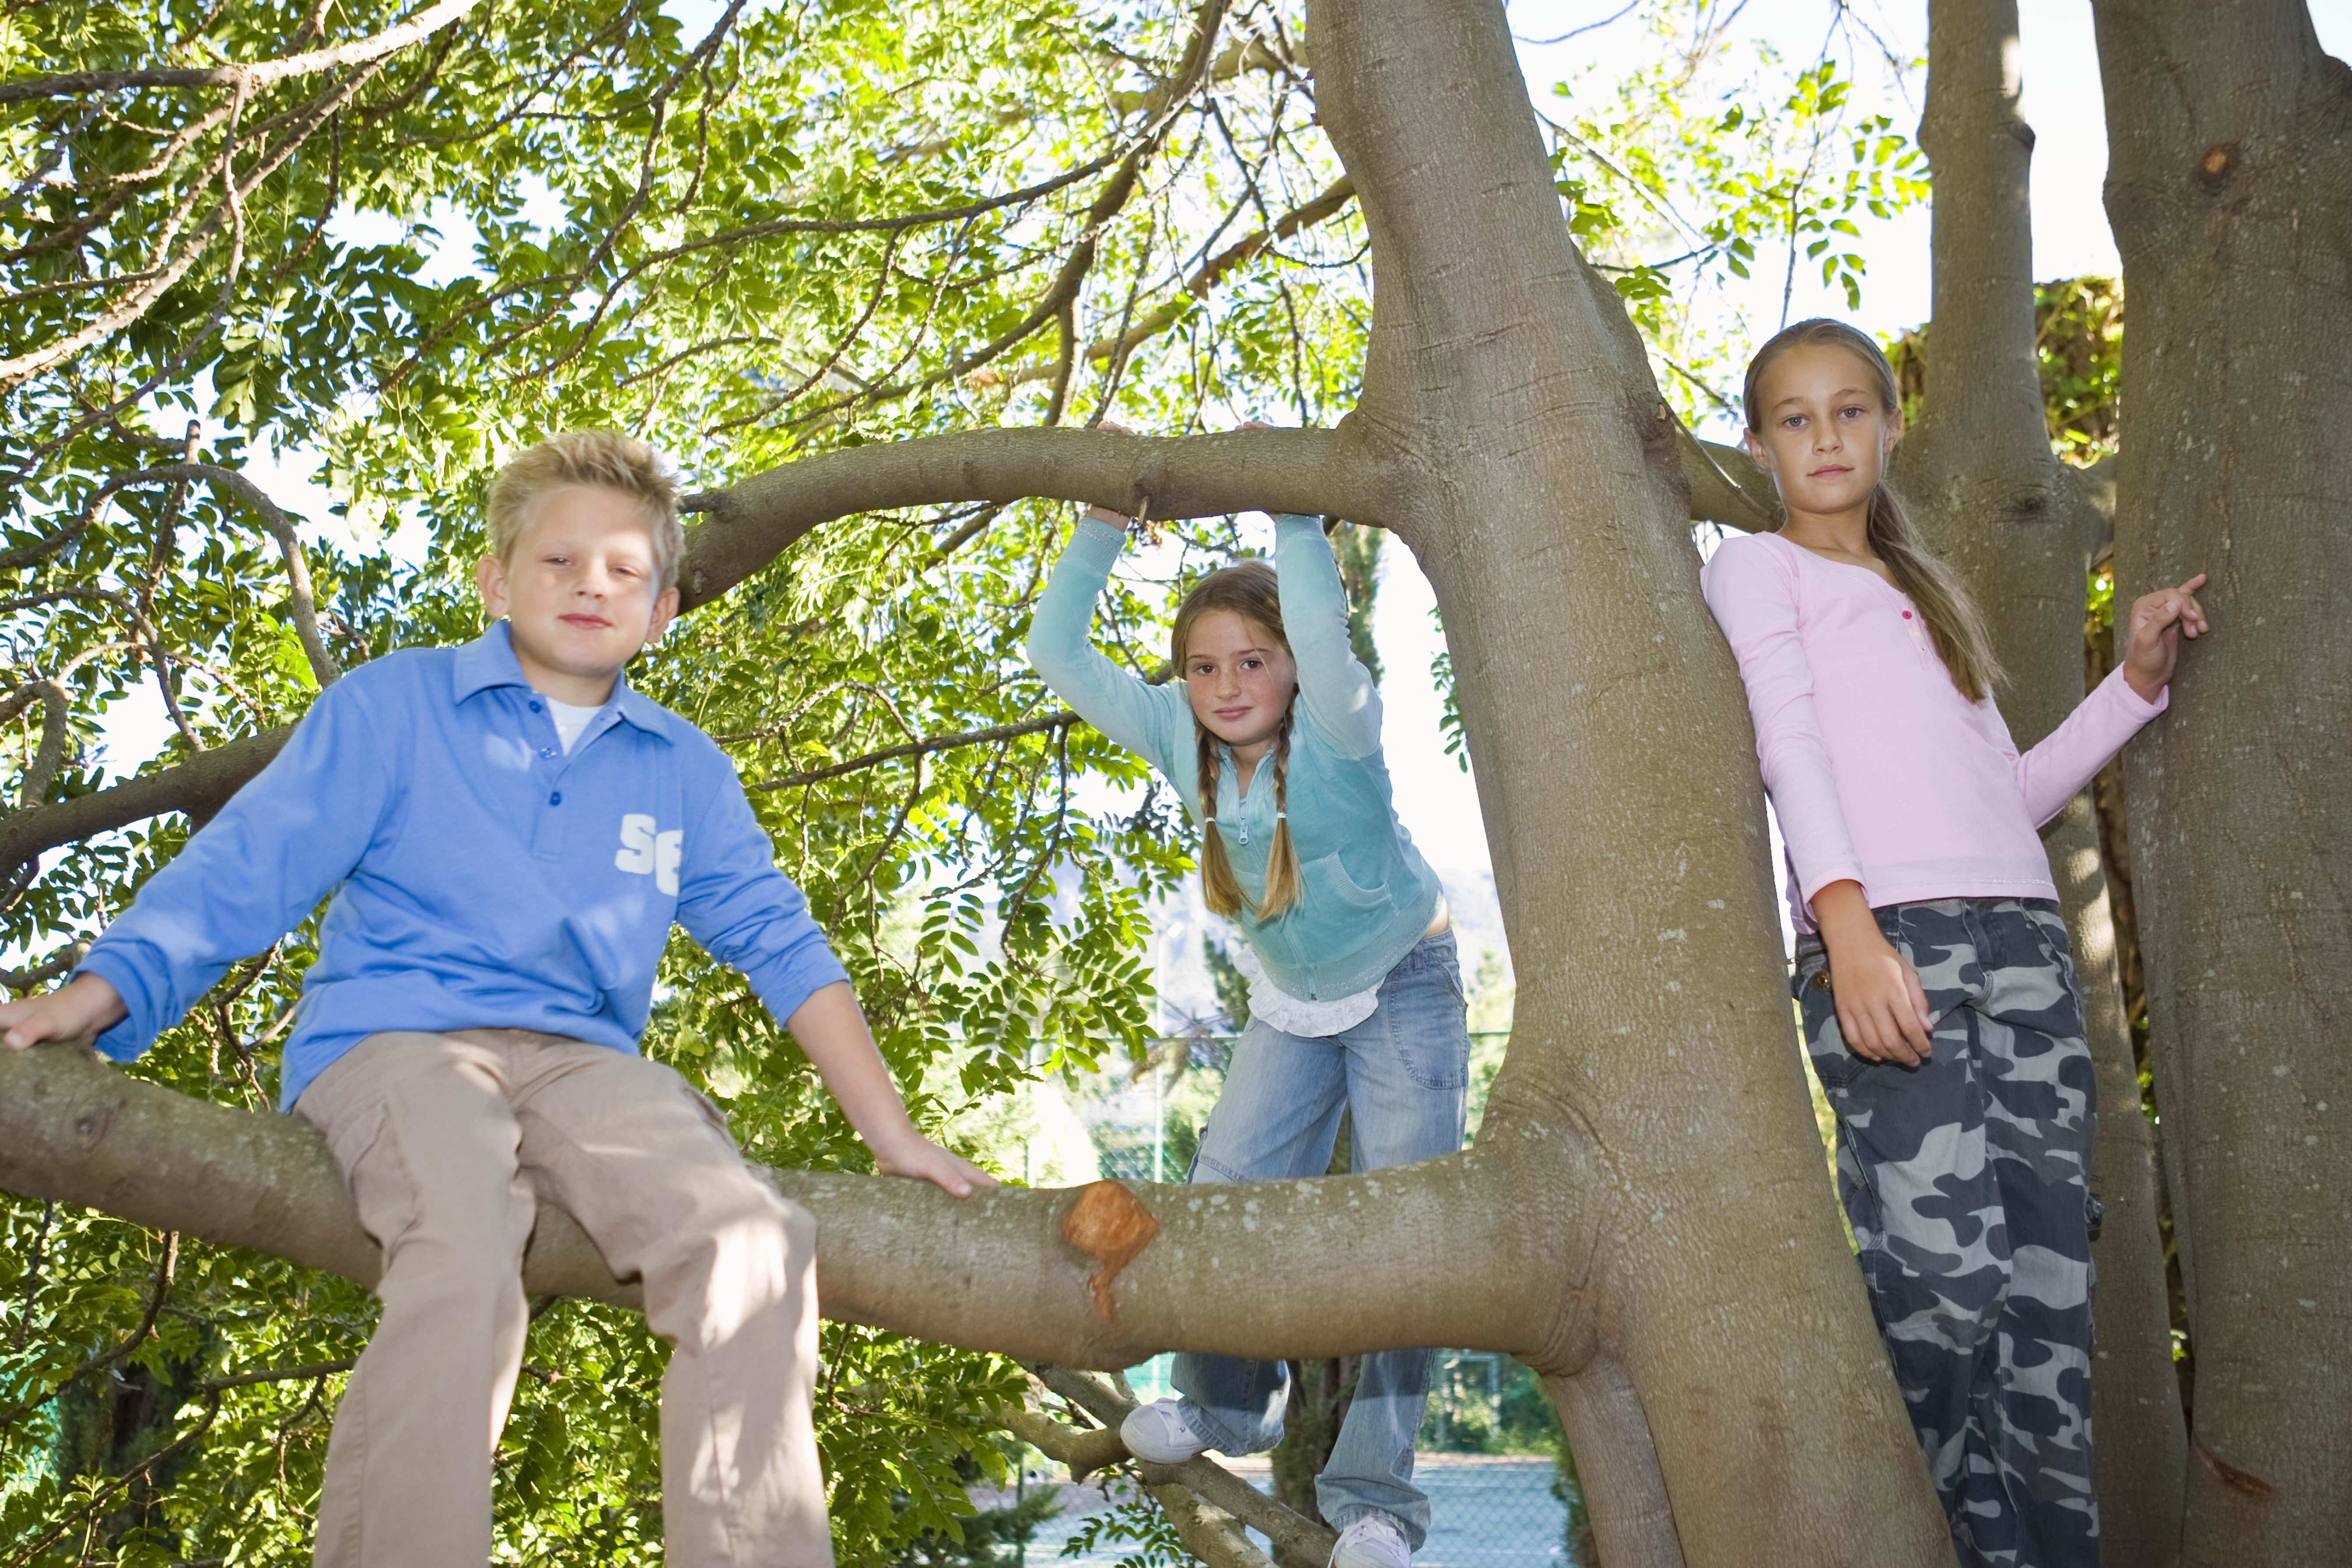 Children in a tree